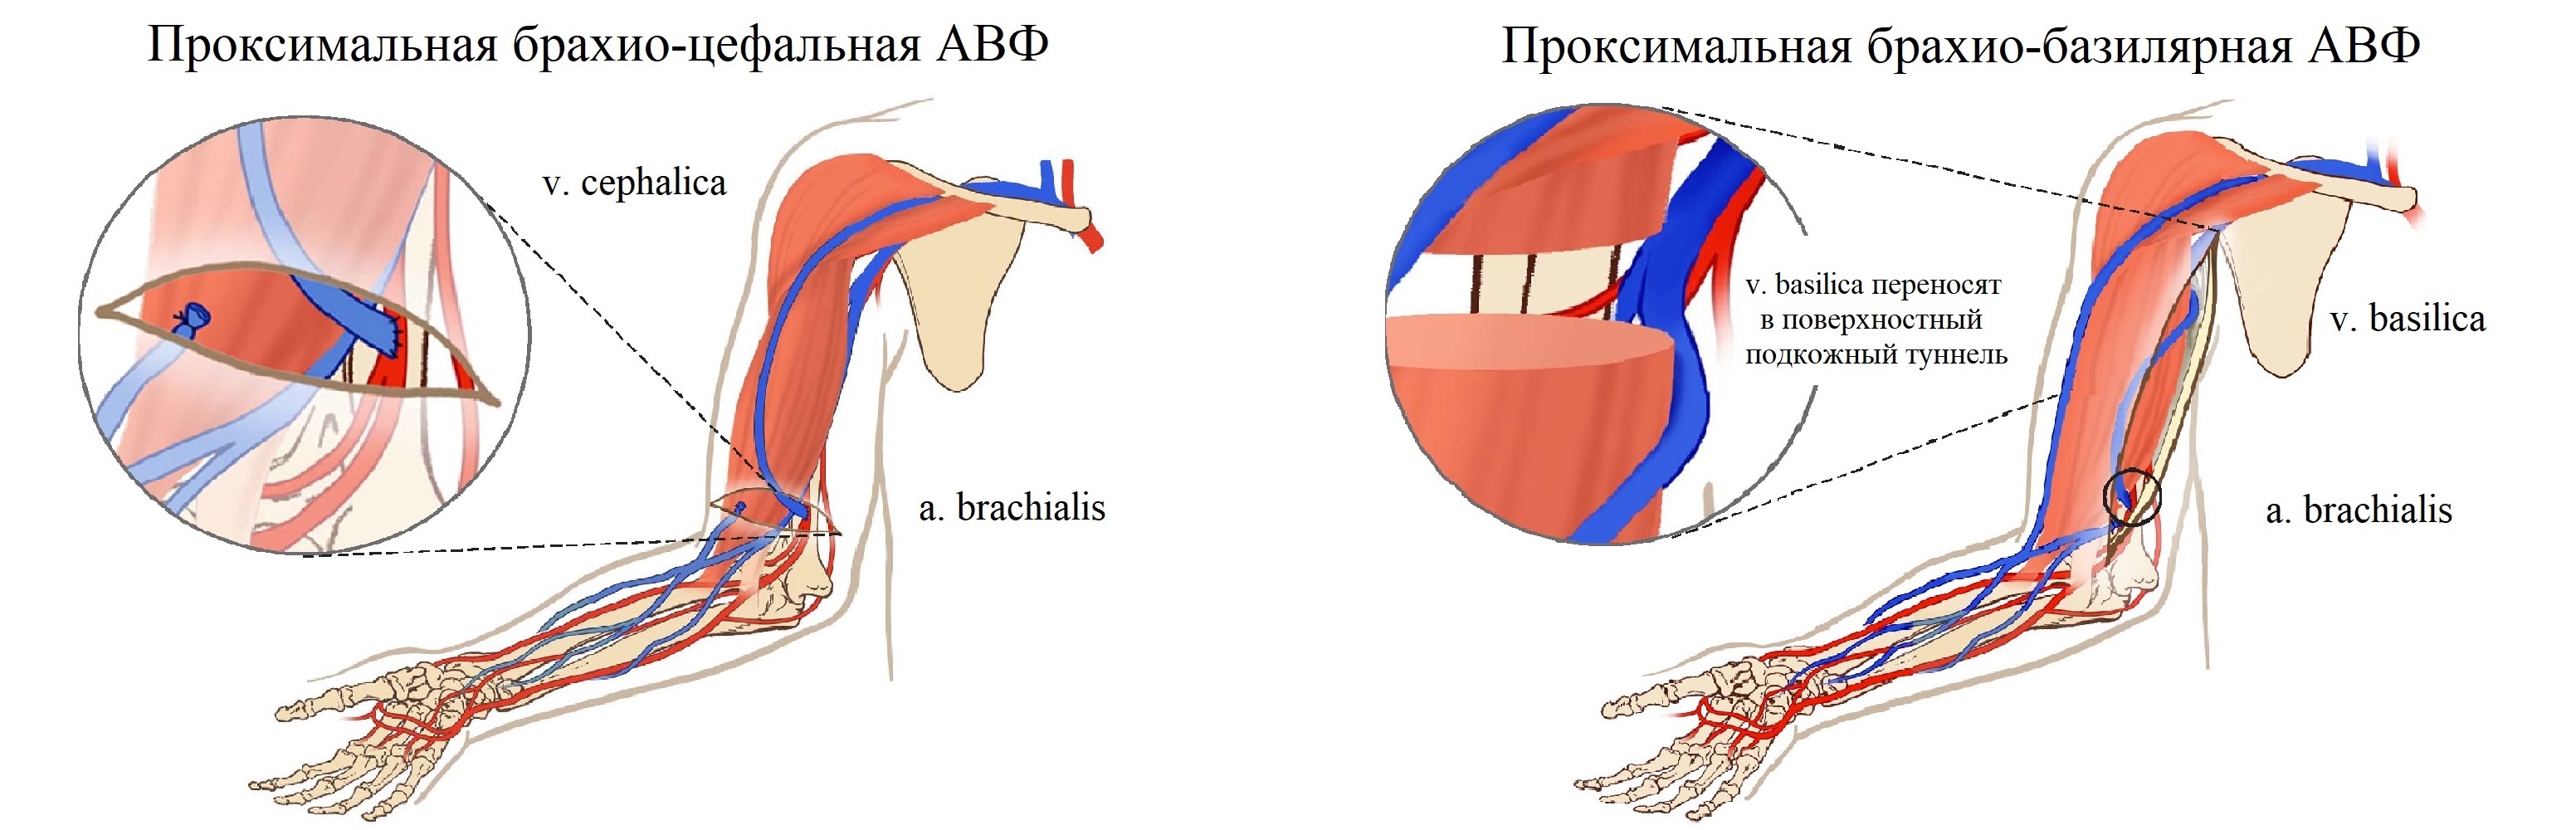 Артериовенозный шунт. Артерио-венозная фистула для гемодиализа. Фистула гемодиализ схема. Артерия венозная фистула.